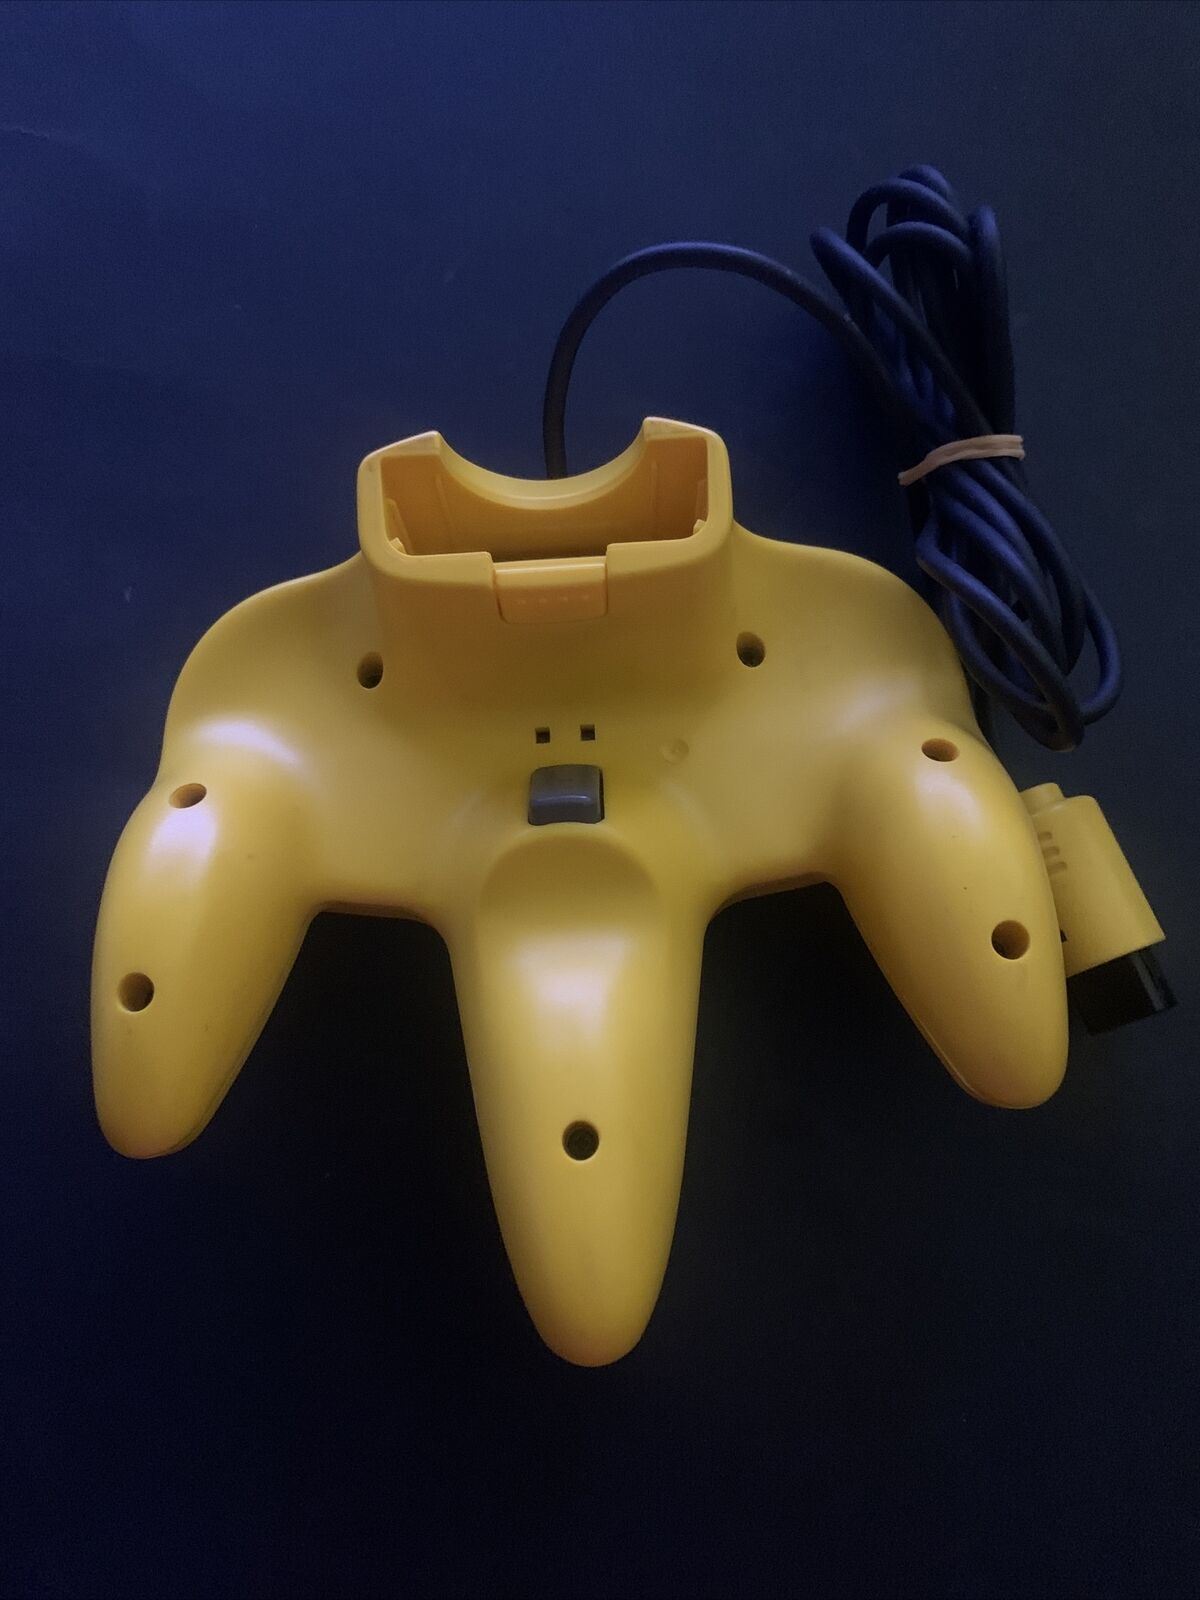 Official Nintendo 64 Controller Yellow NUS-005